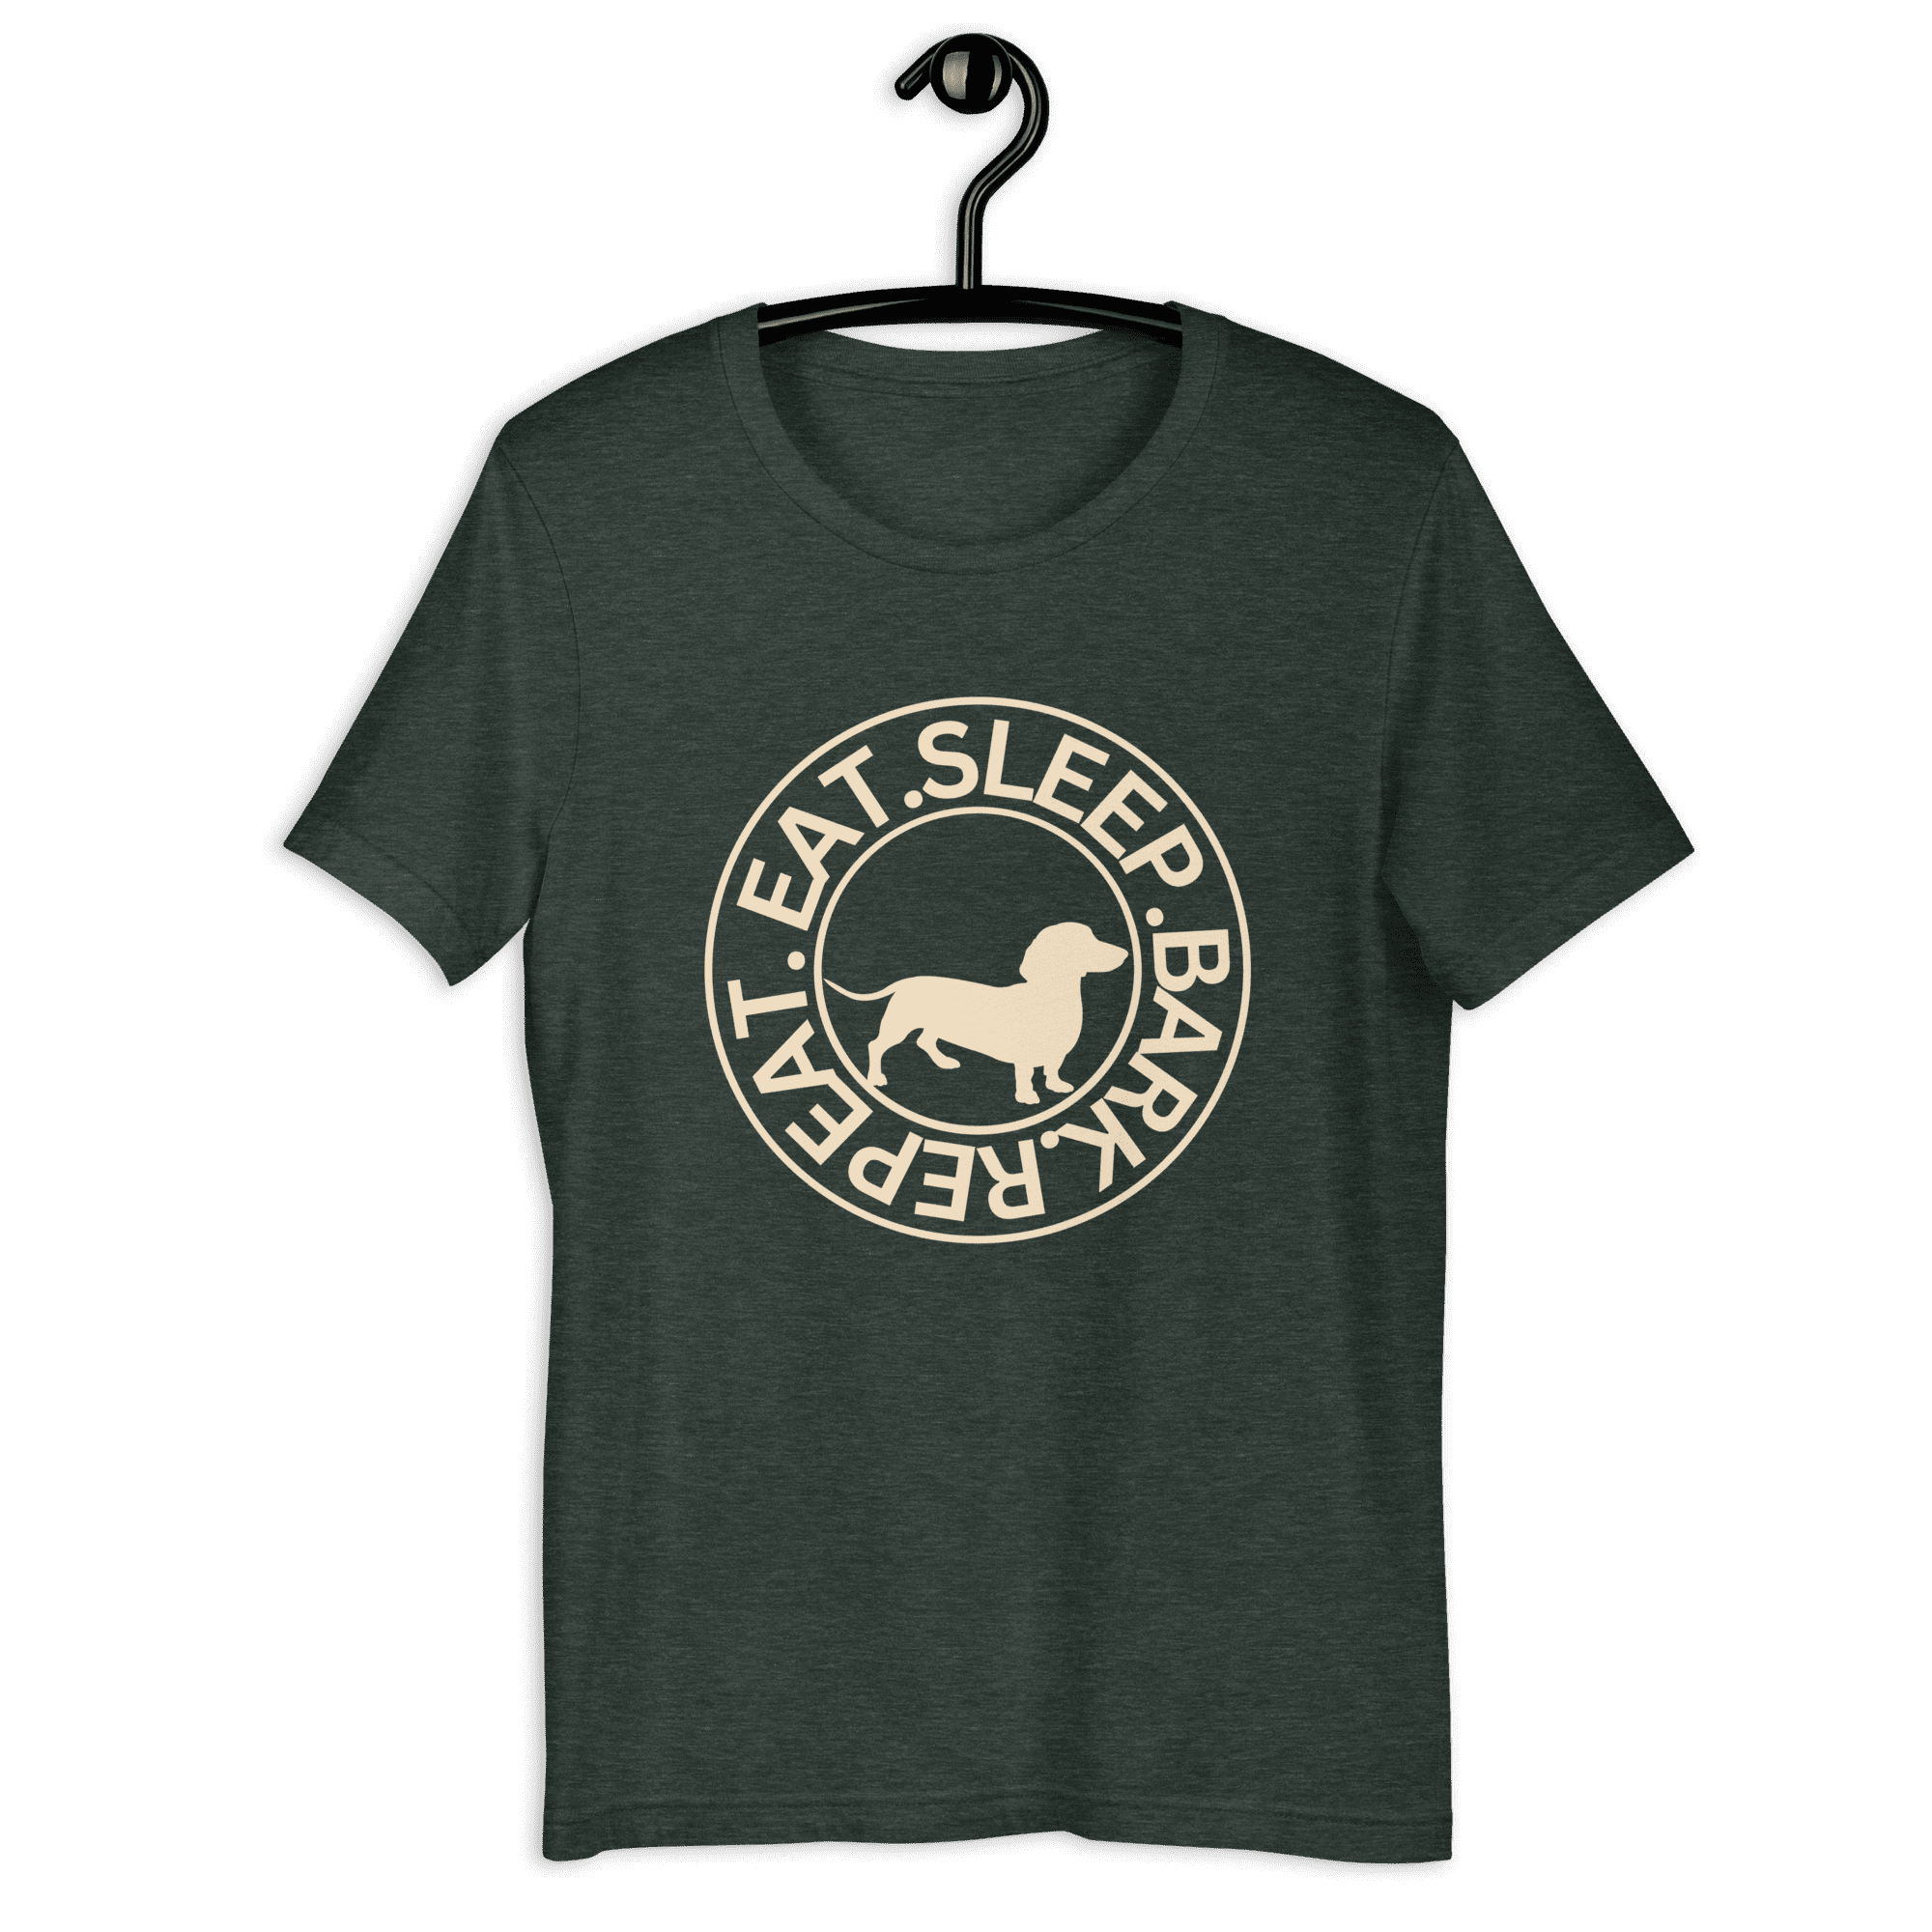 Eat Sleep Bark Repeat Transylvanian Hound (Erdélyi Kopó) Unisex T-Shirt. Charcoal